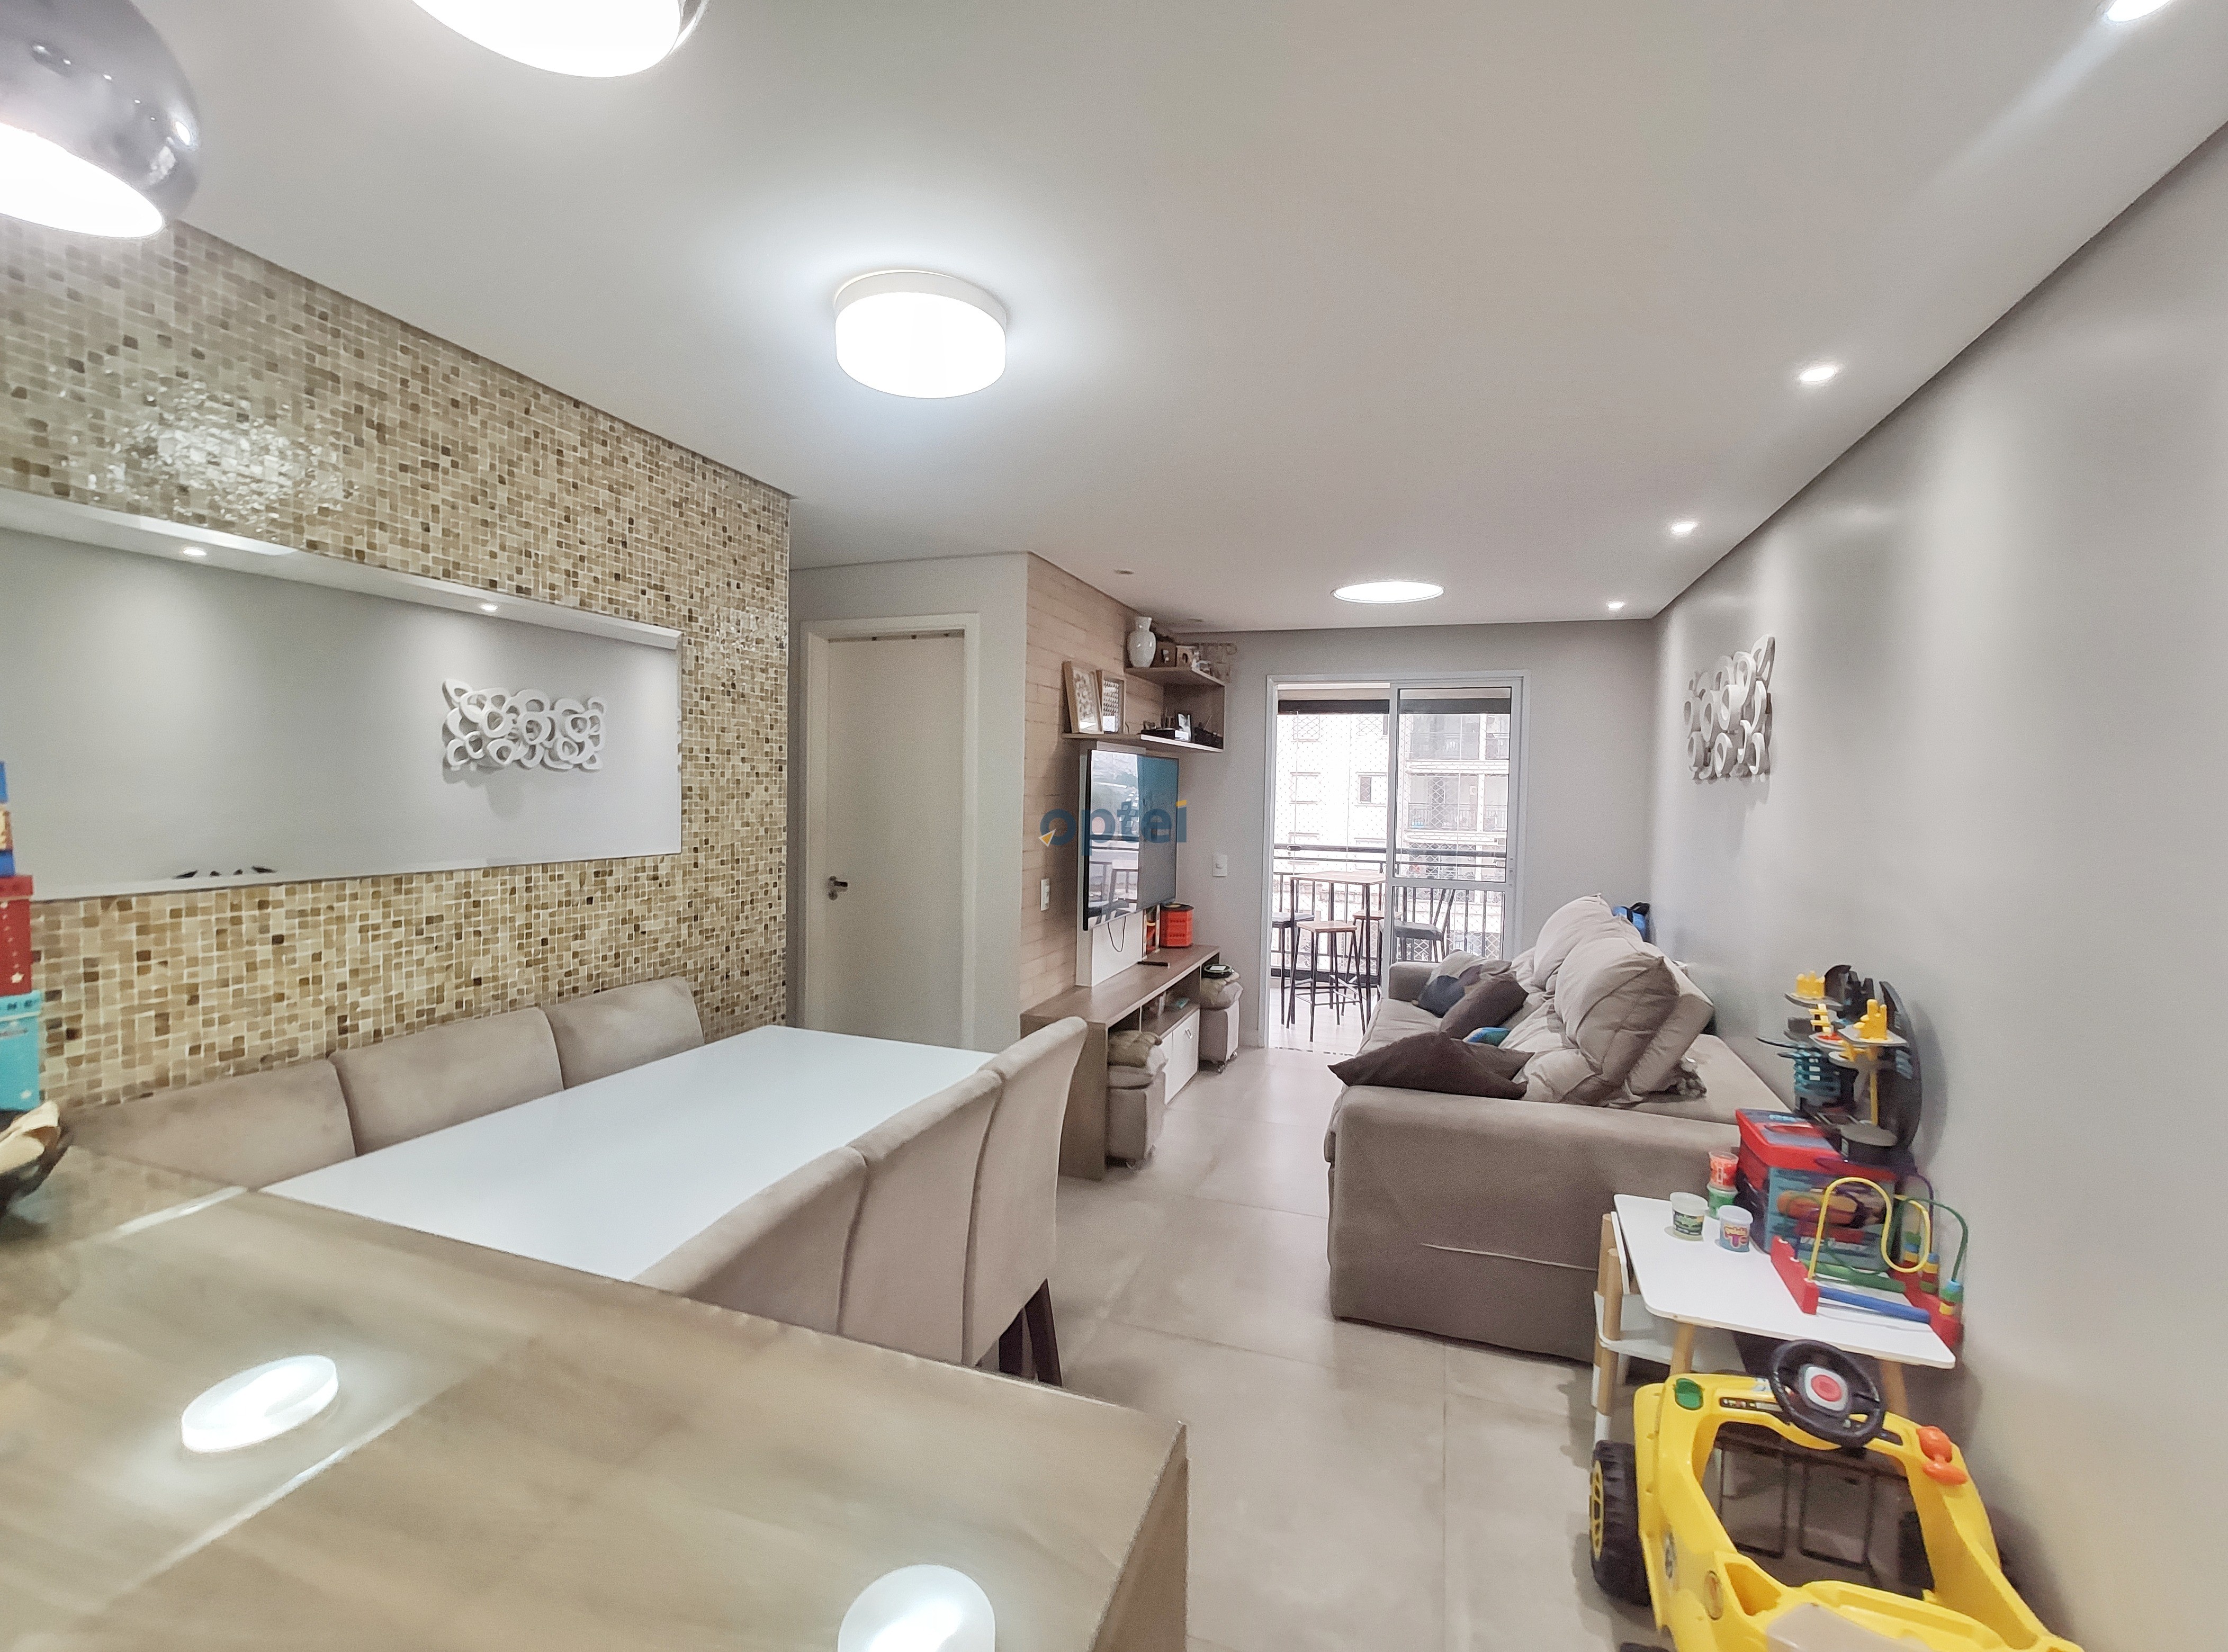 Apartamento de 2 dorms(suite), 1 vaga, mobiliado, lazer completo condominio Exuberance - Rudge Ramos - São Bernardo do Campo